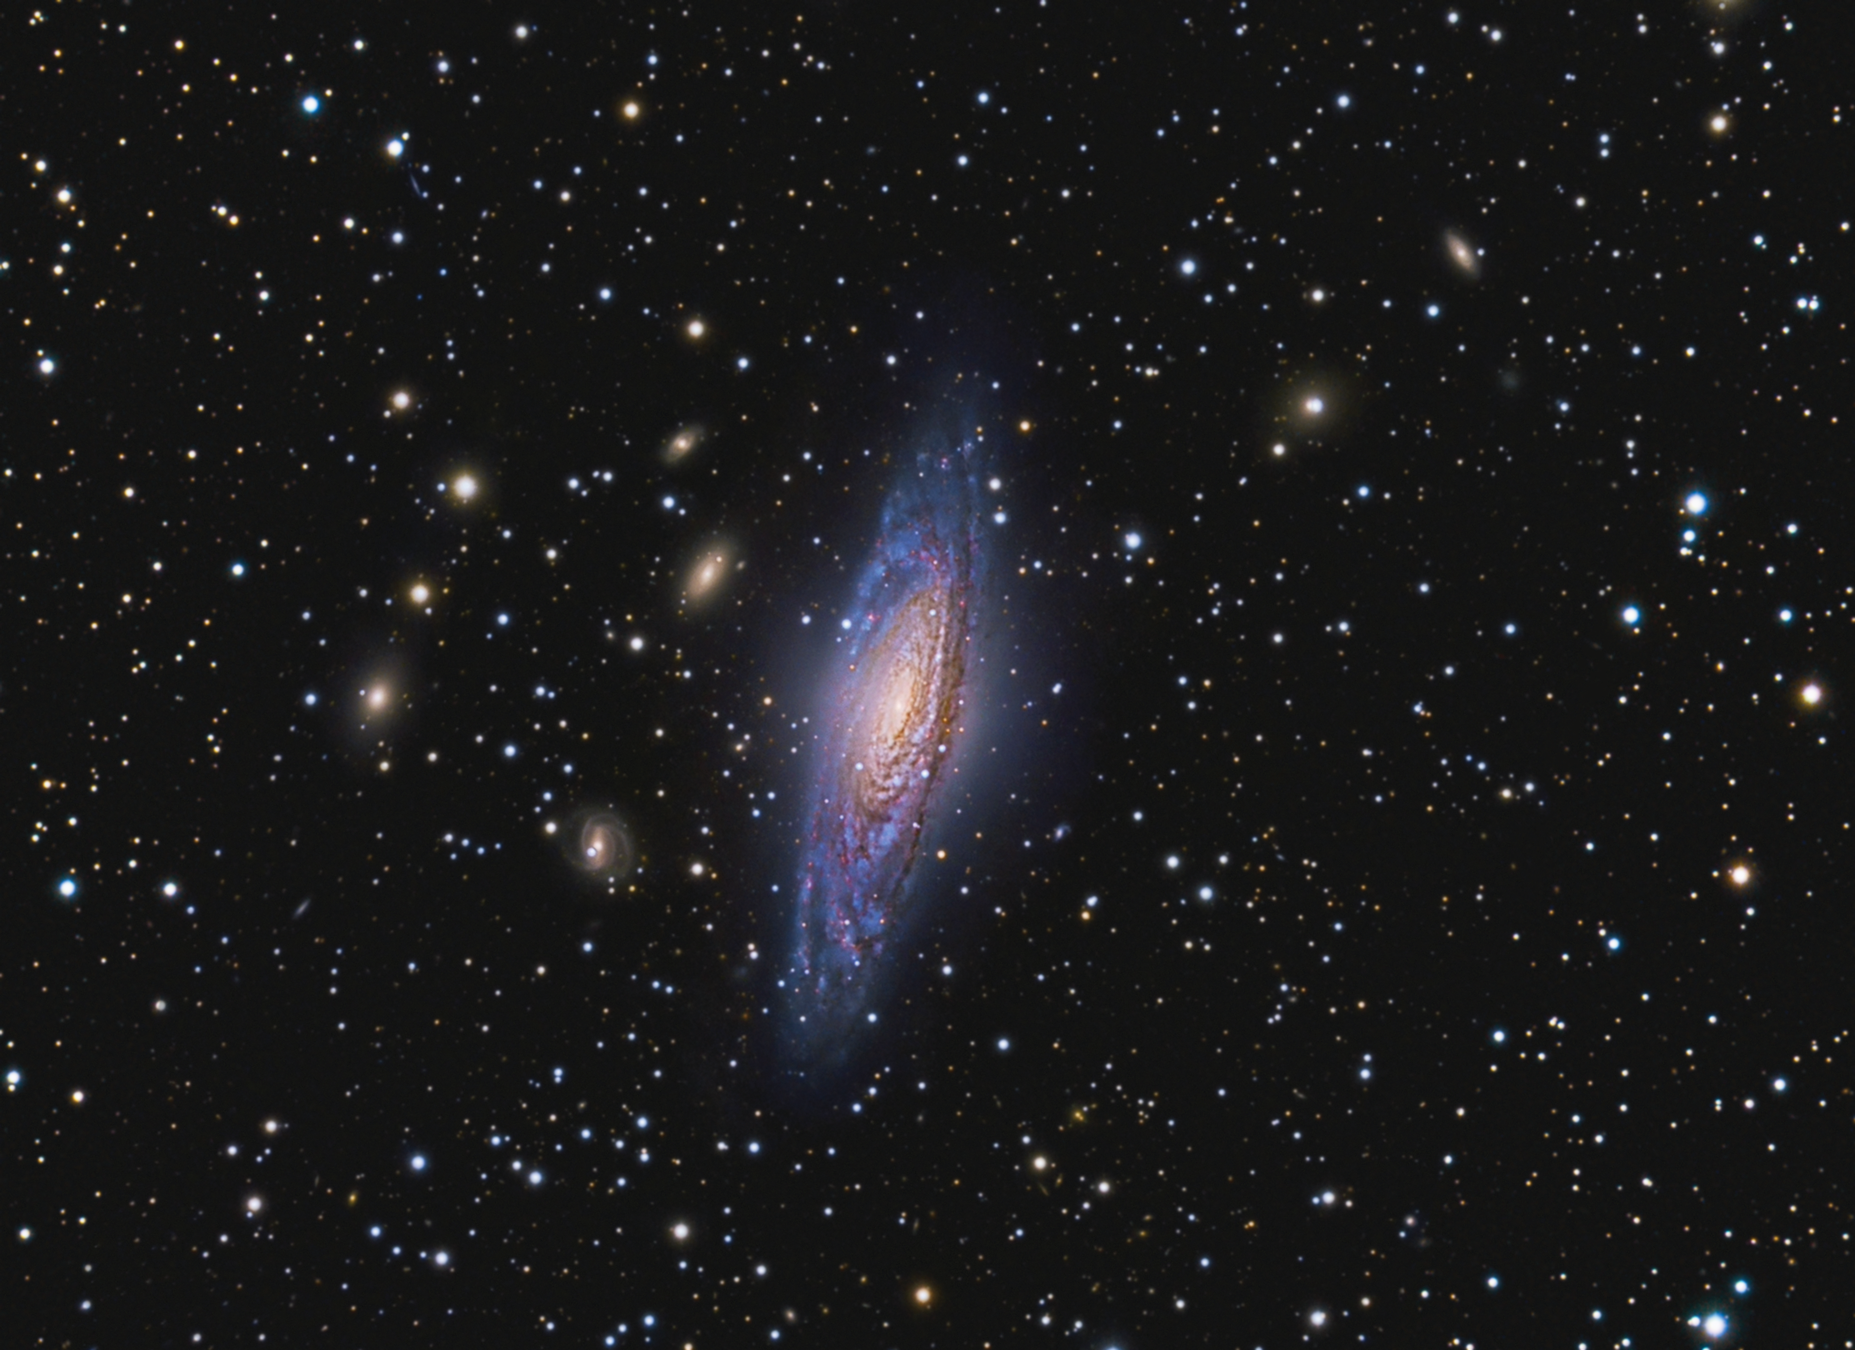 Ngc - 7331 Unbarred Spiral Galaxy